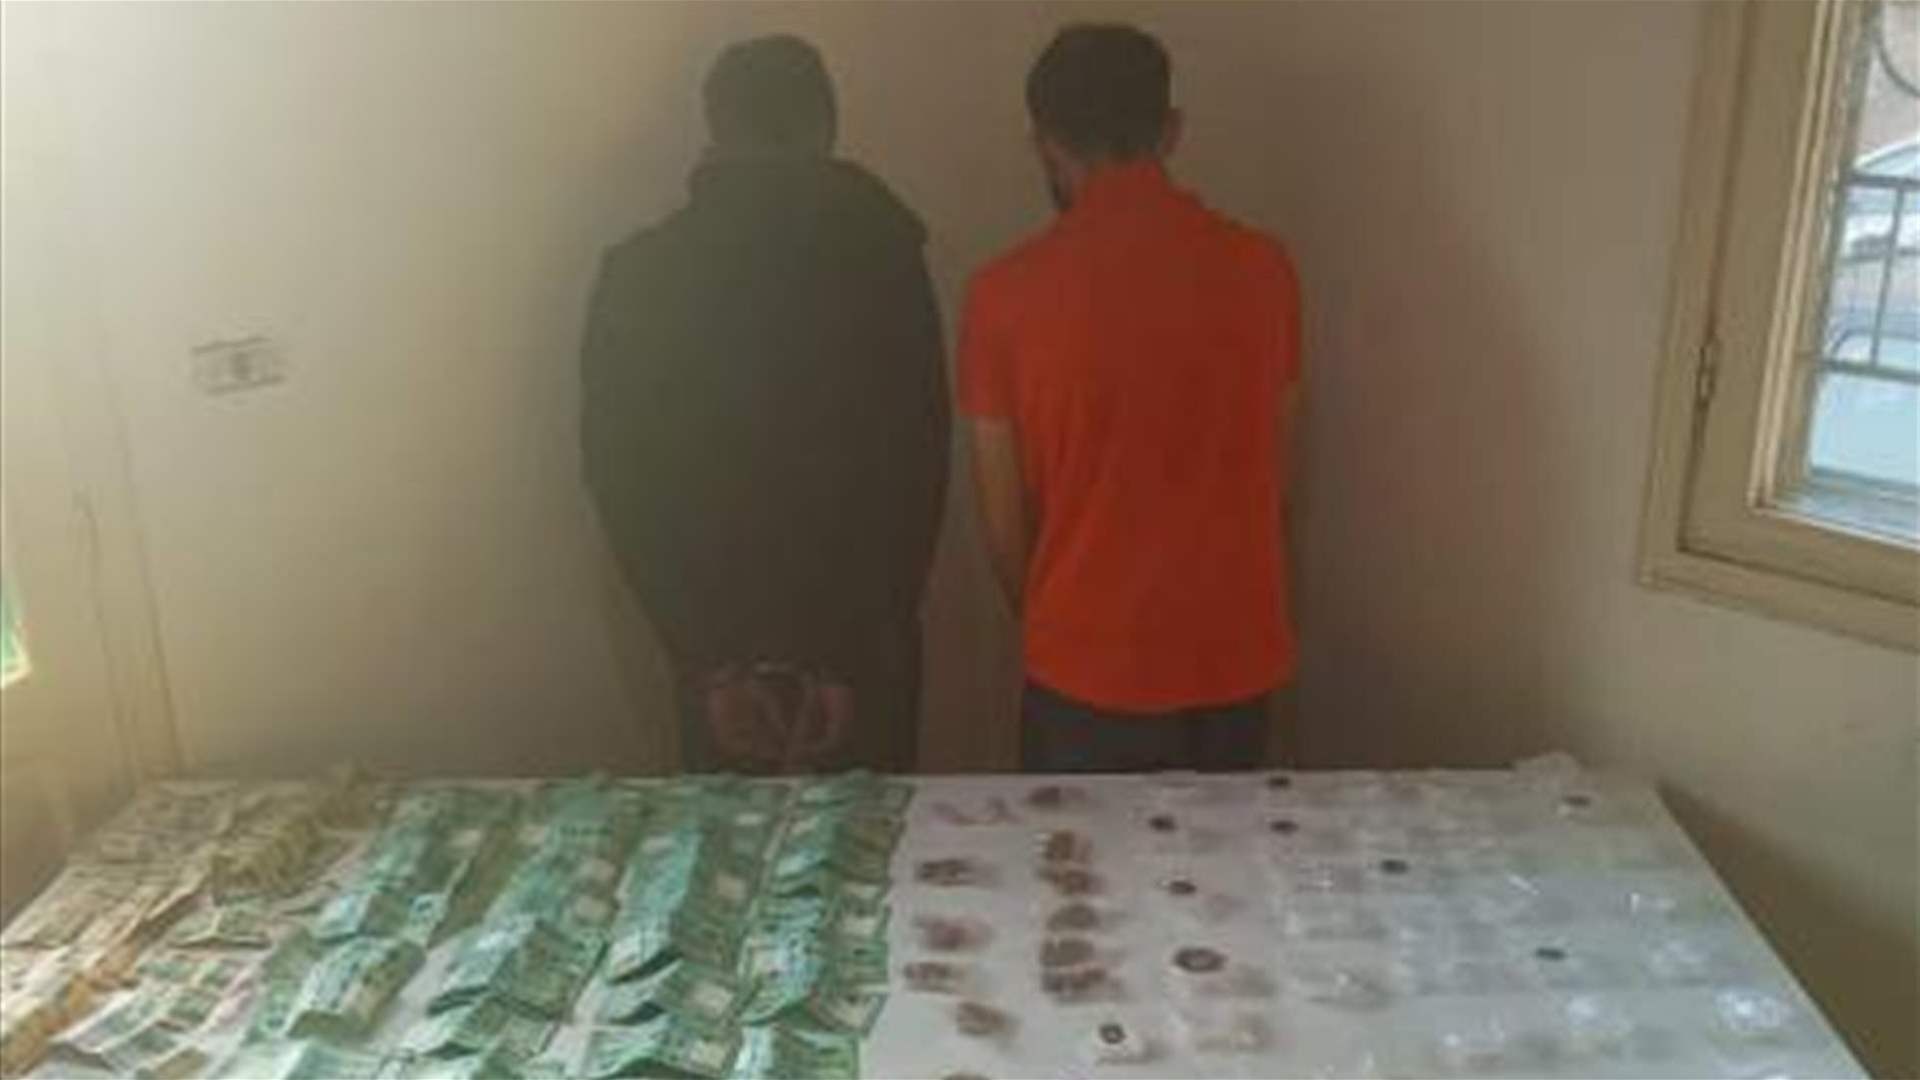 بالجرم المشهود... توقيف مروجَي مخدّرات في محلّة السانت تيريز - الحدت